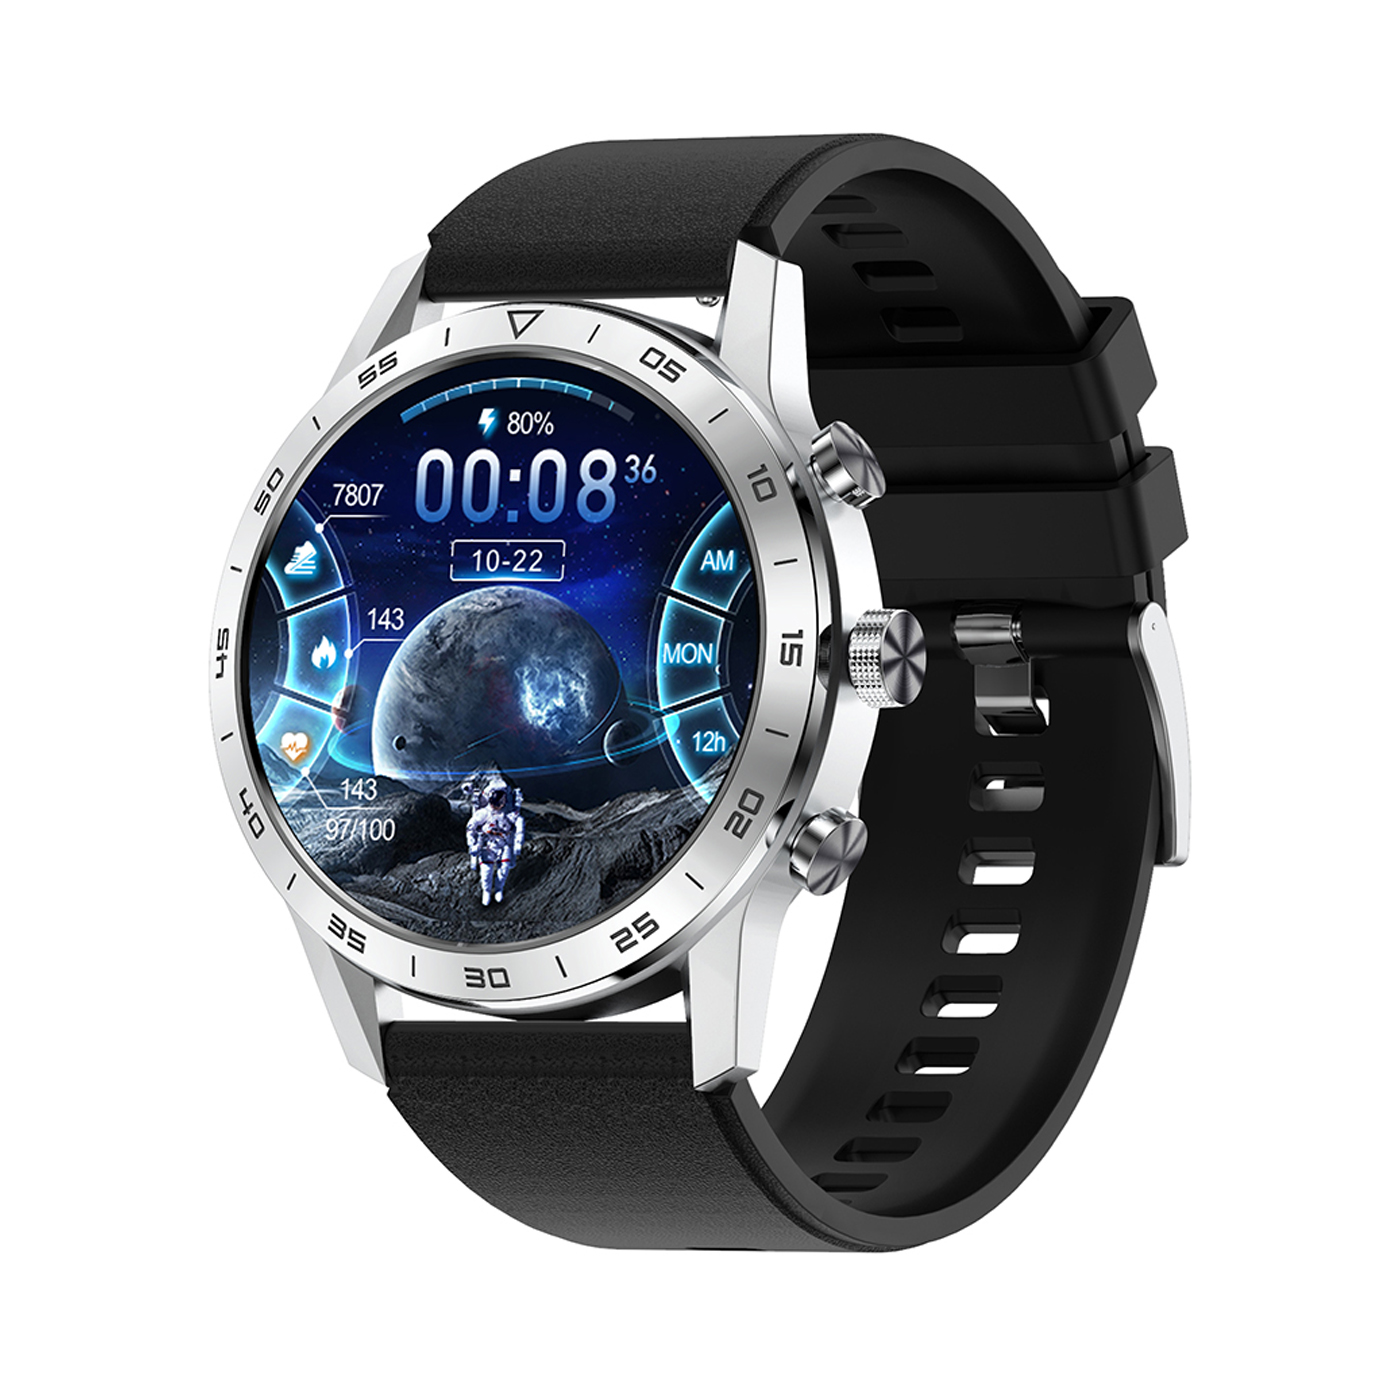 آنباکس ساعت هوشمند لوکا مدل LC-SW520 توسط مجید عبدلی مسینان در تاریخ ۲۶ شهریور ۱۴۰۰